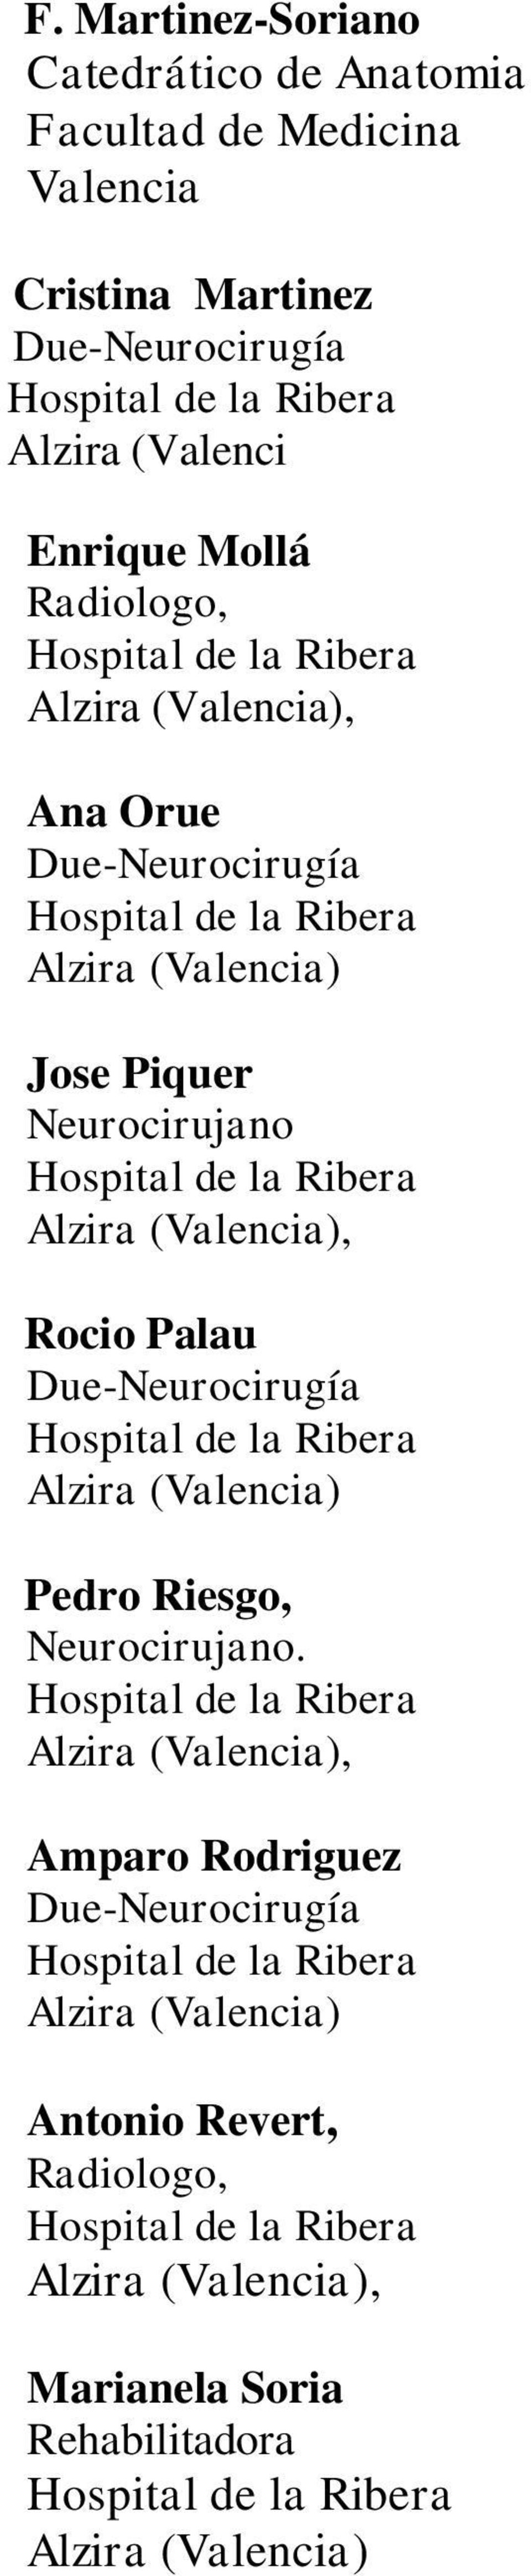 Due-Neurocirugía Jose Piquer Neurocirujano, Rocio Palau Due-Neurocirugía Pedro Riesgo,